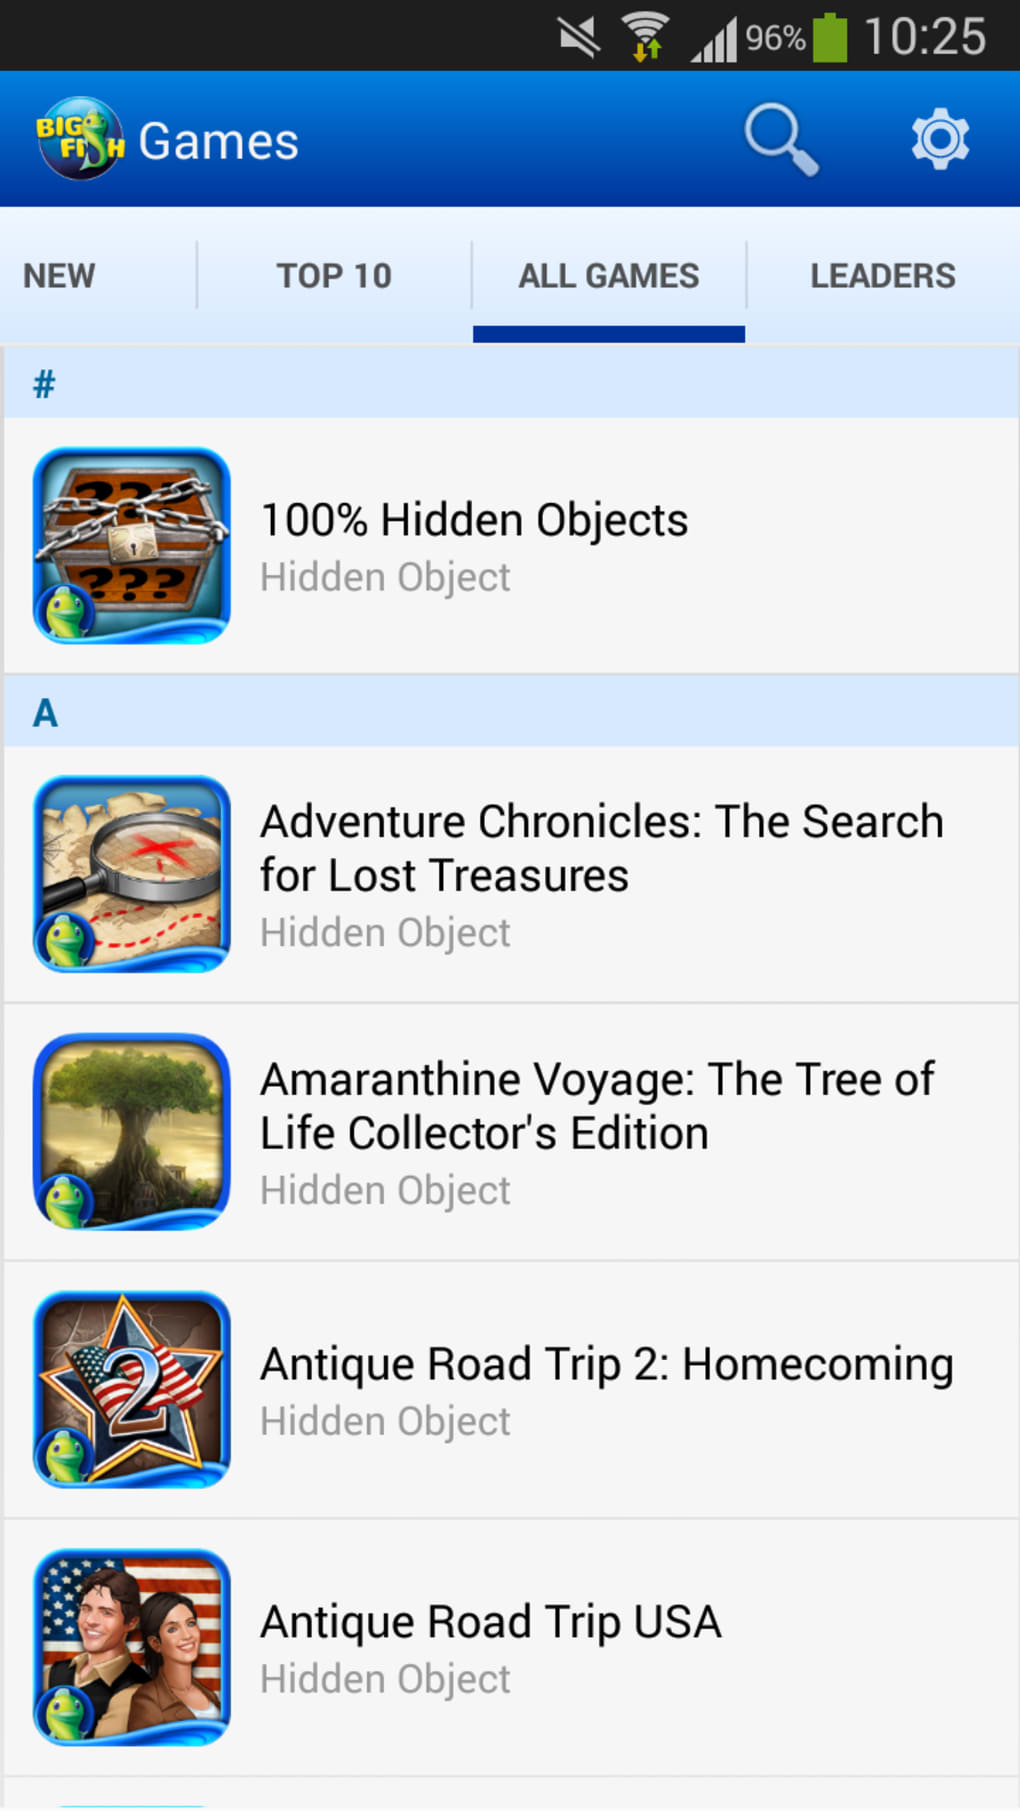 big fish games app store for mac